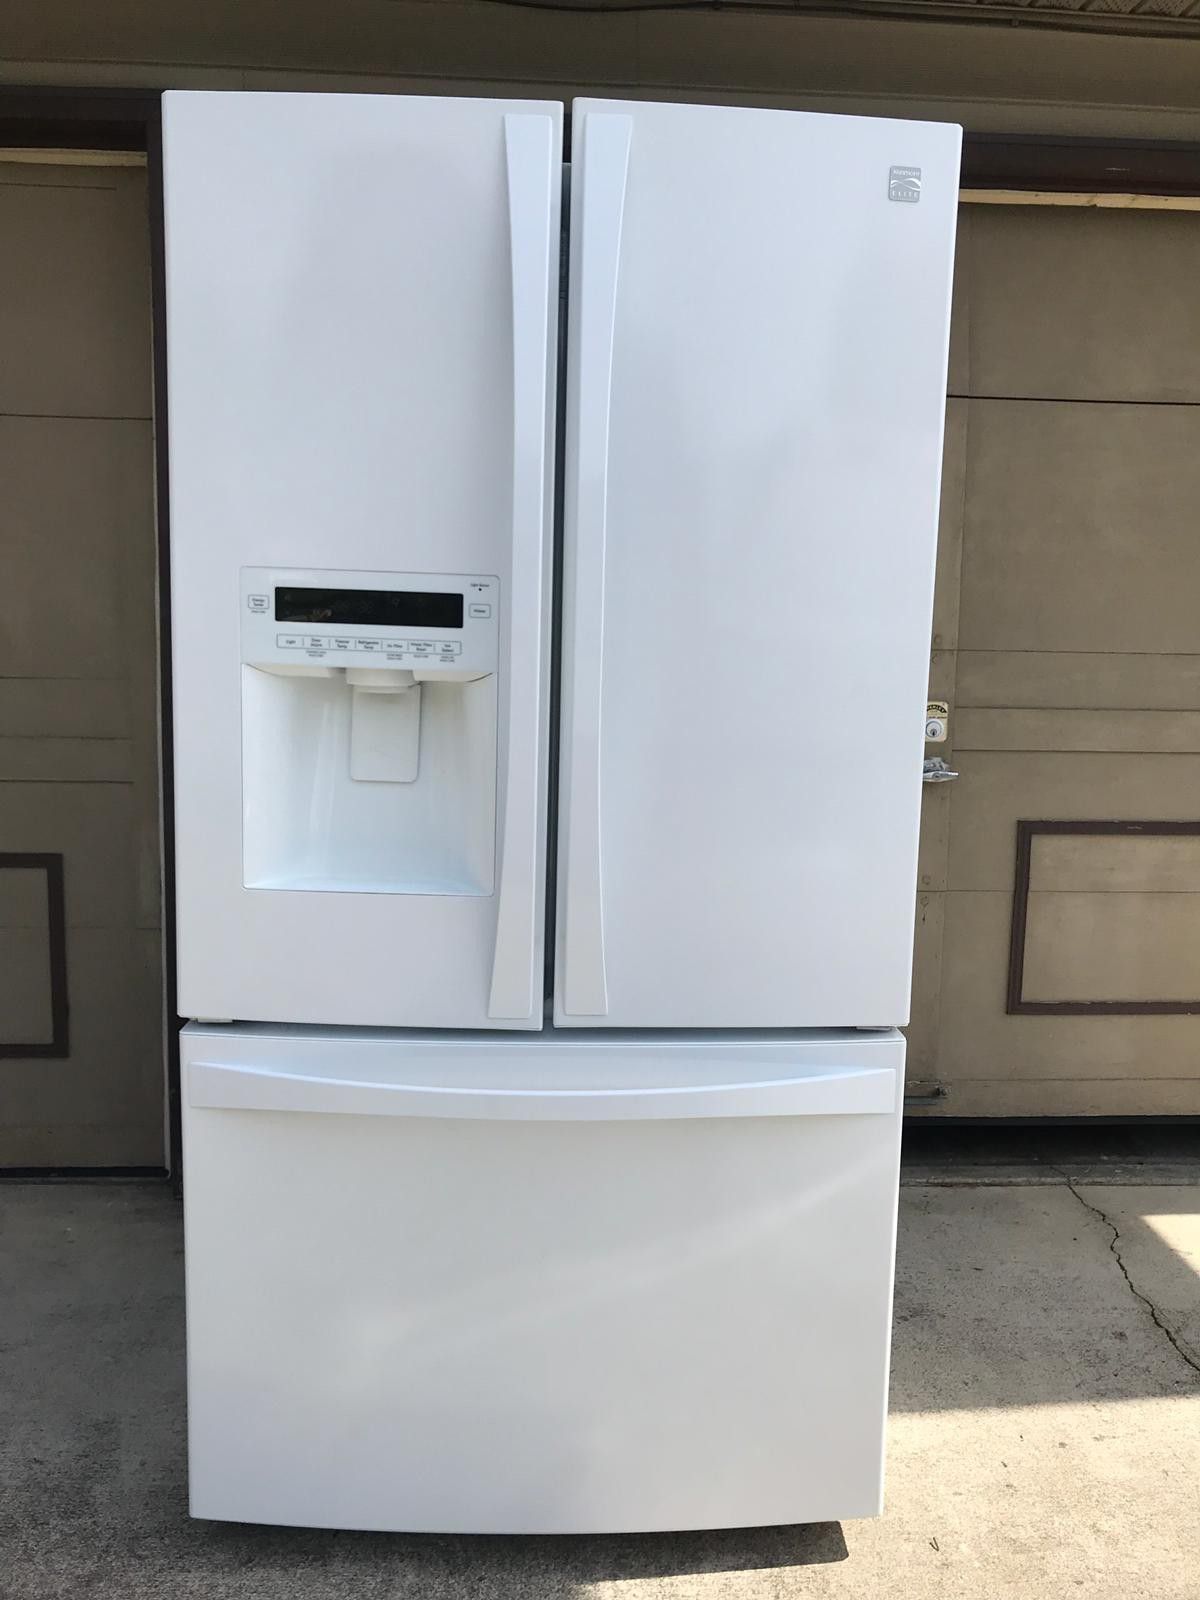 Kenmore Elite refrigerator.